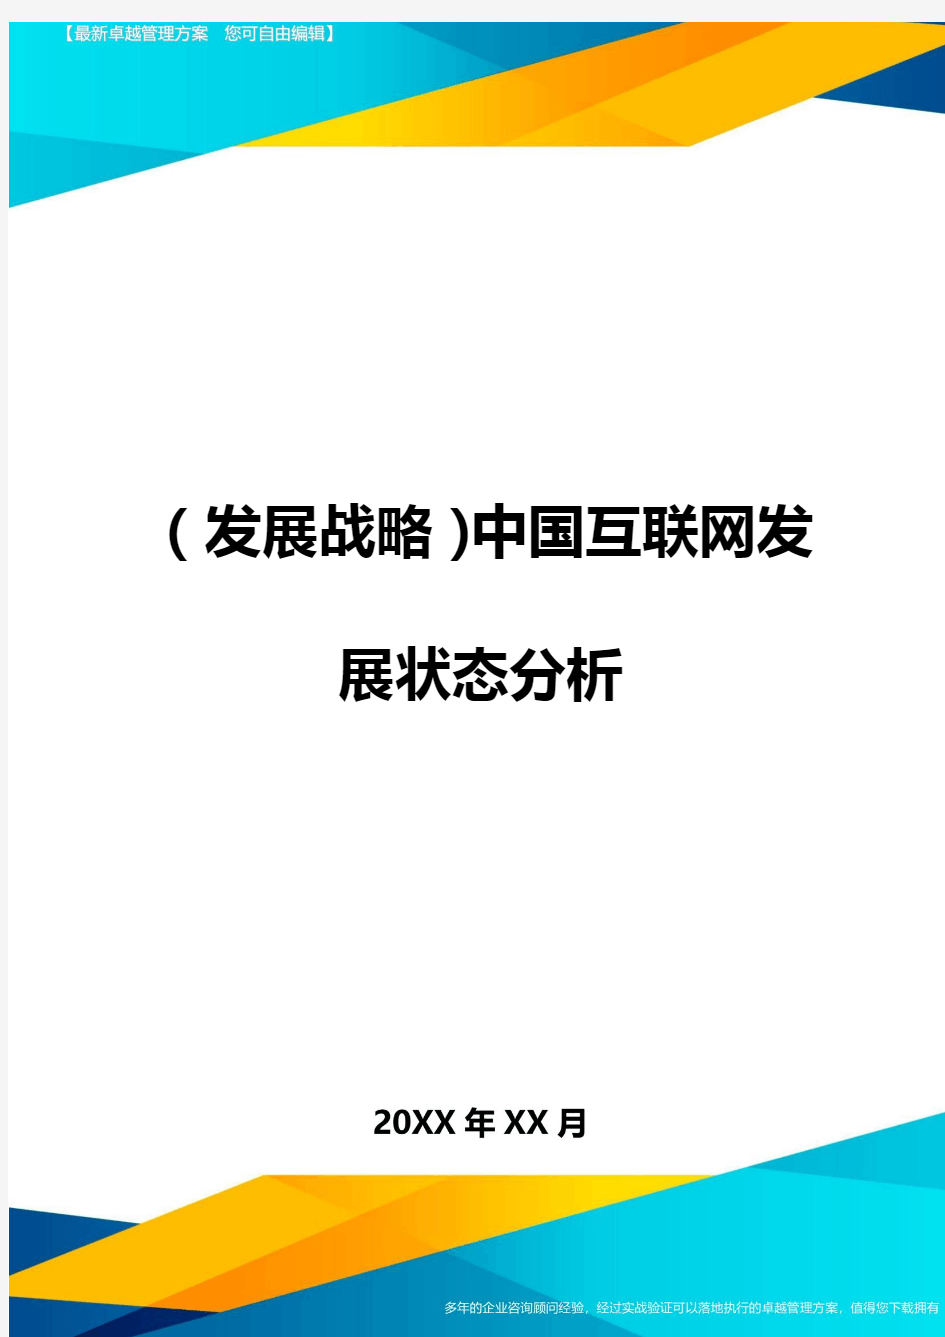 (发展战略)中国互联网发展状态分析最全版